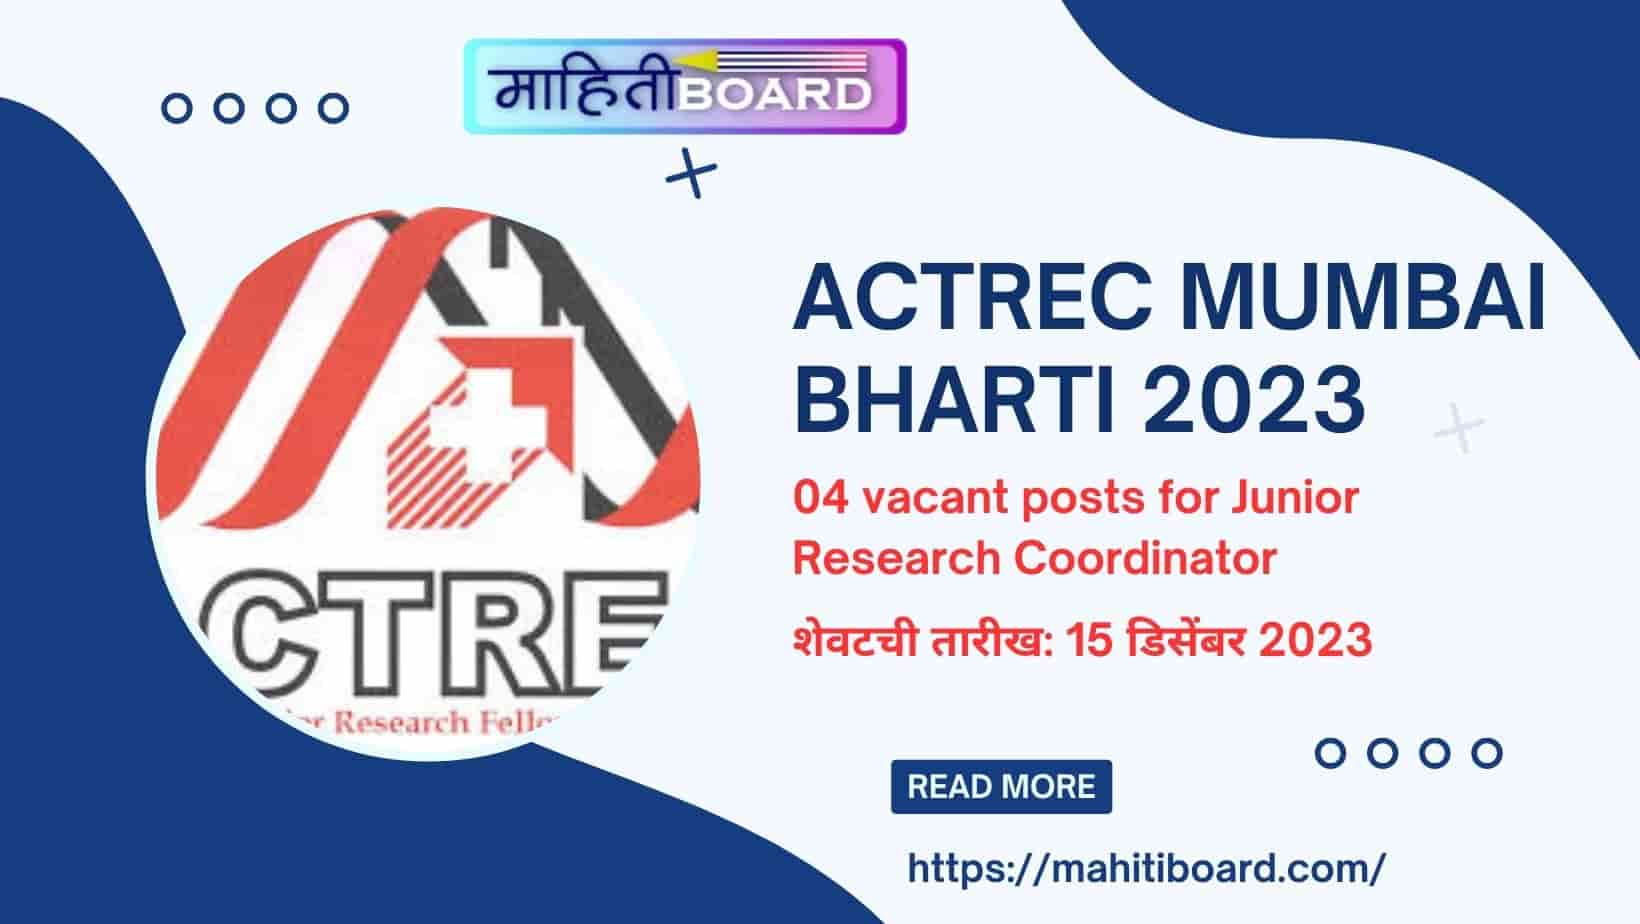 ACTREC Mumbai Bharti 2023